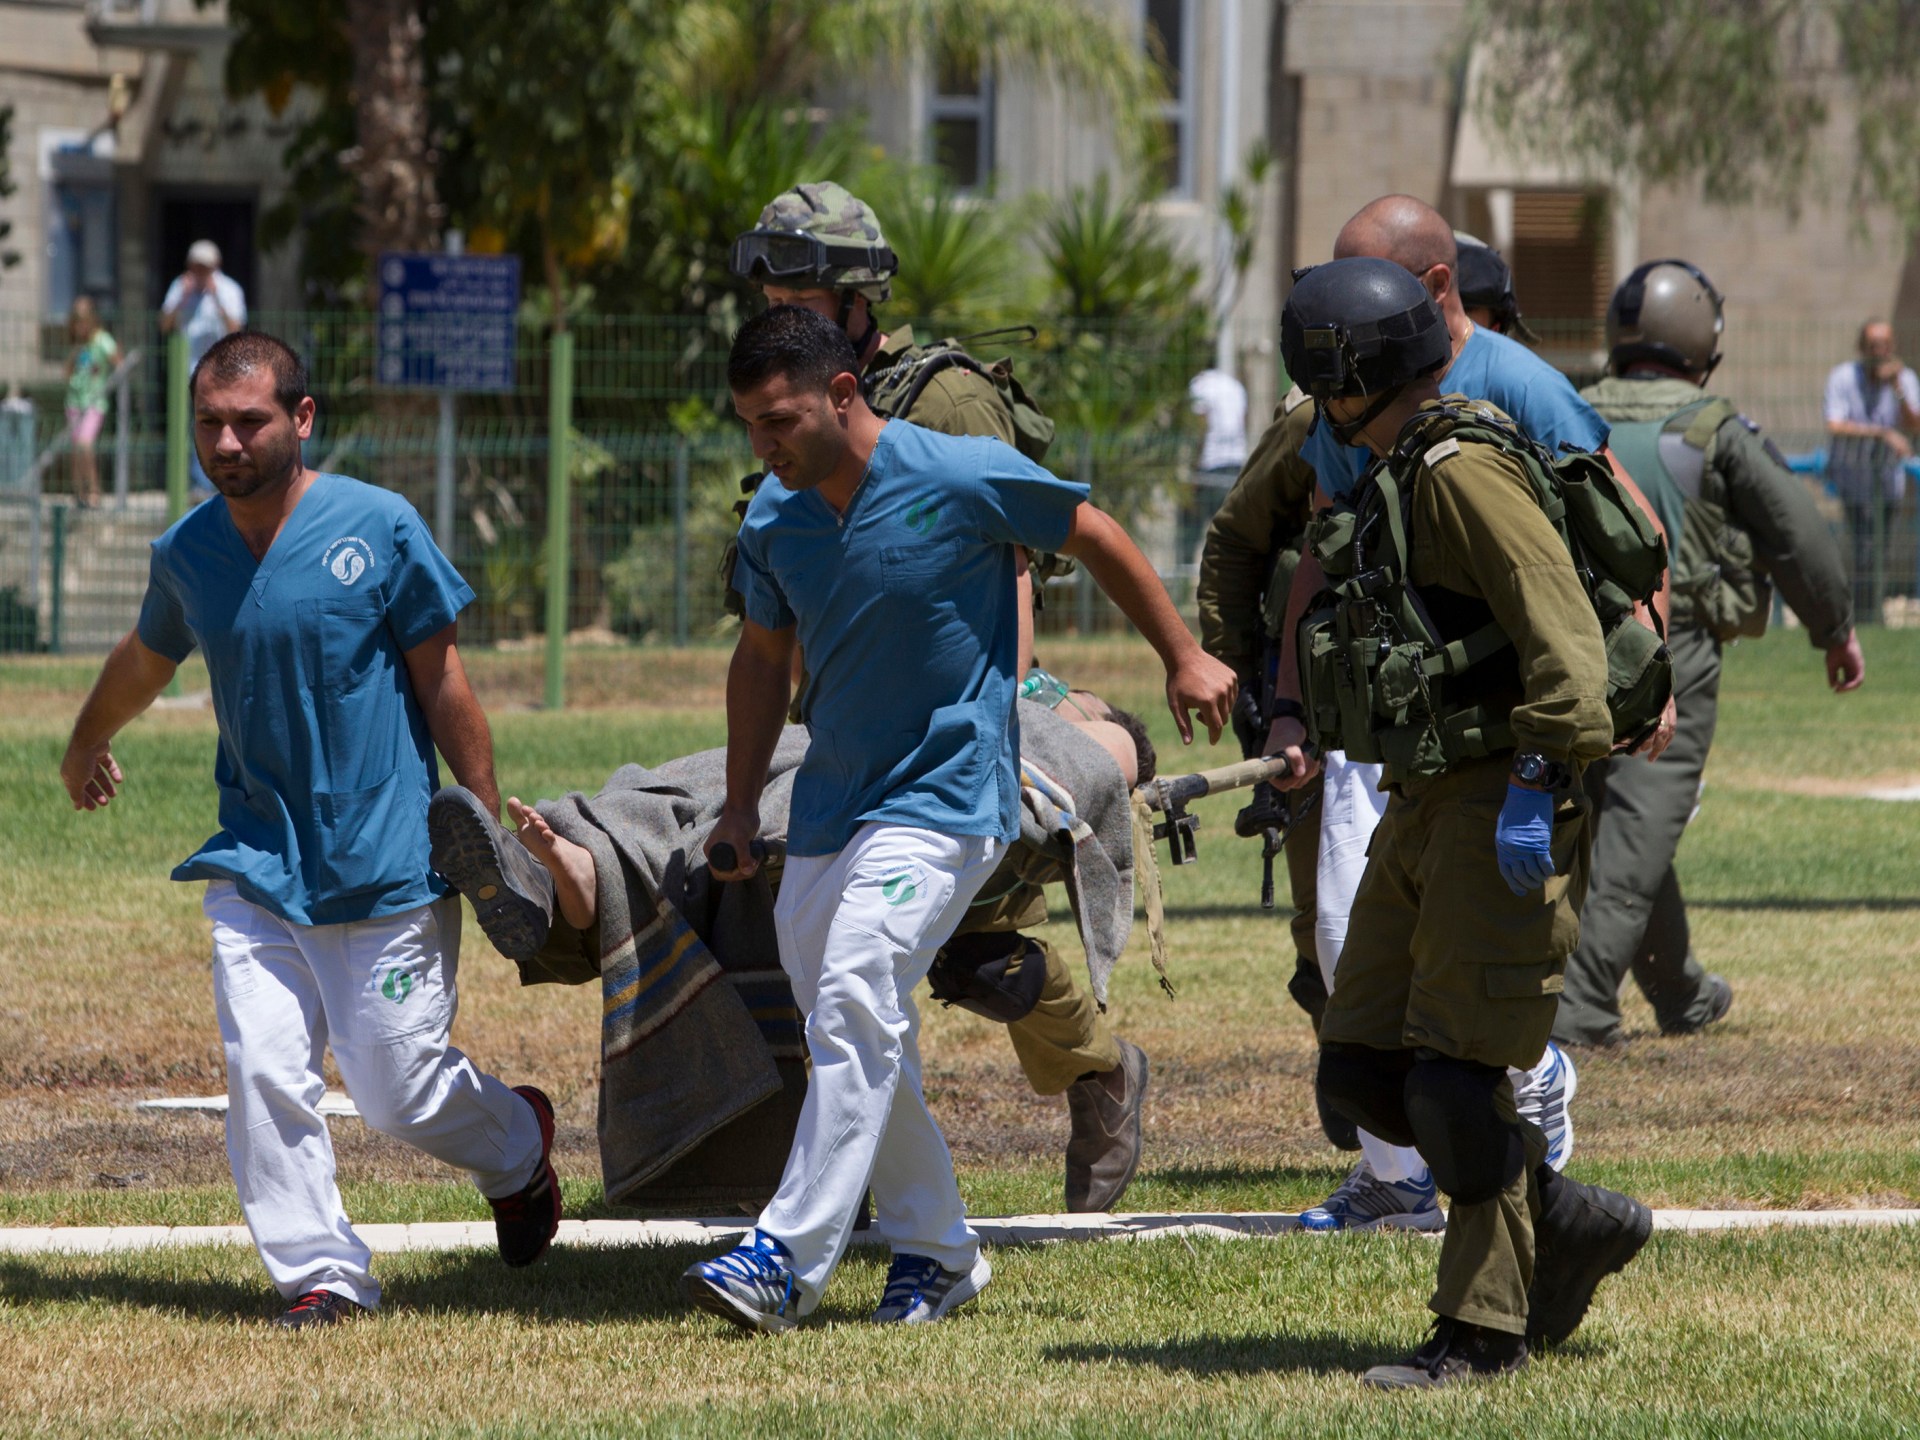 جراء شراسة المعارك بغزة.. 500 جندي إسرائيلي أصيبوا بصدمات نفسية | أخبار – البوكس نيوز